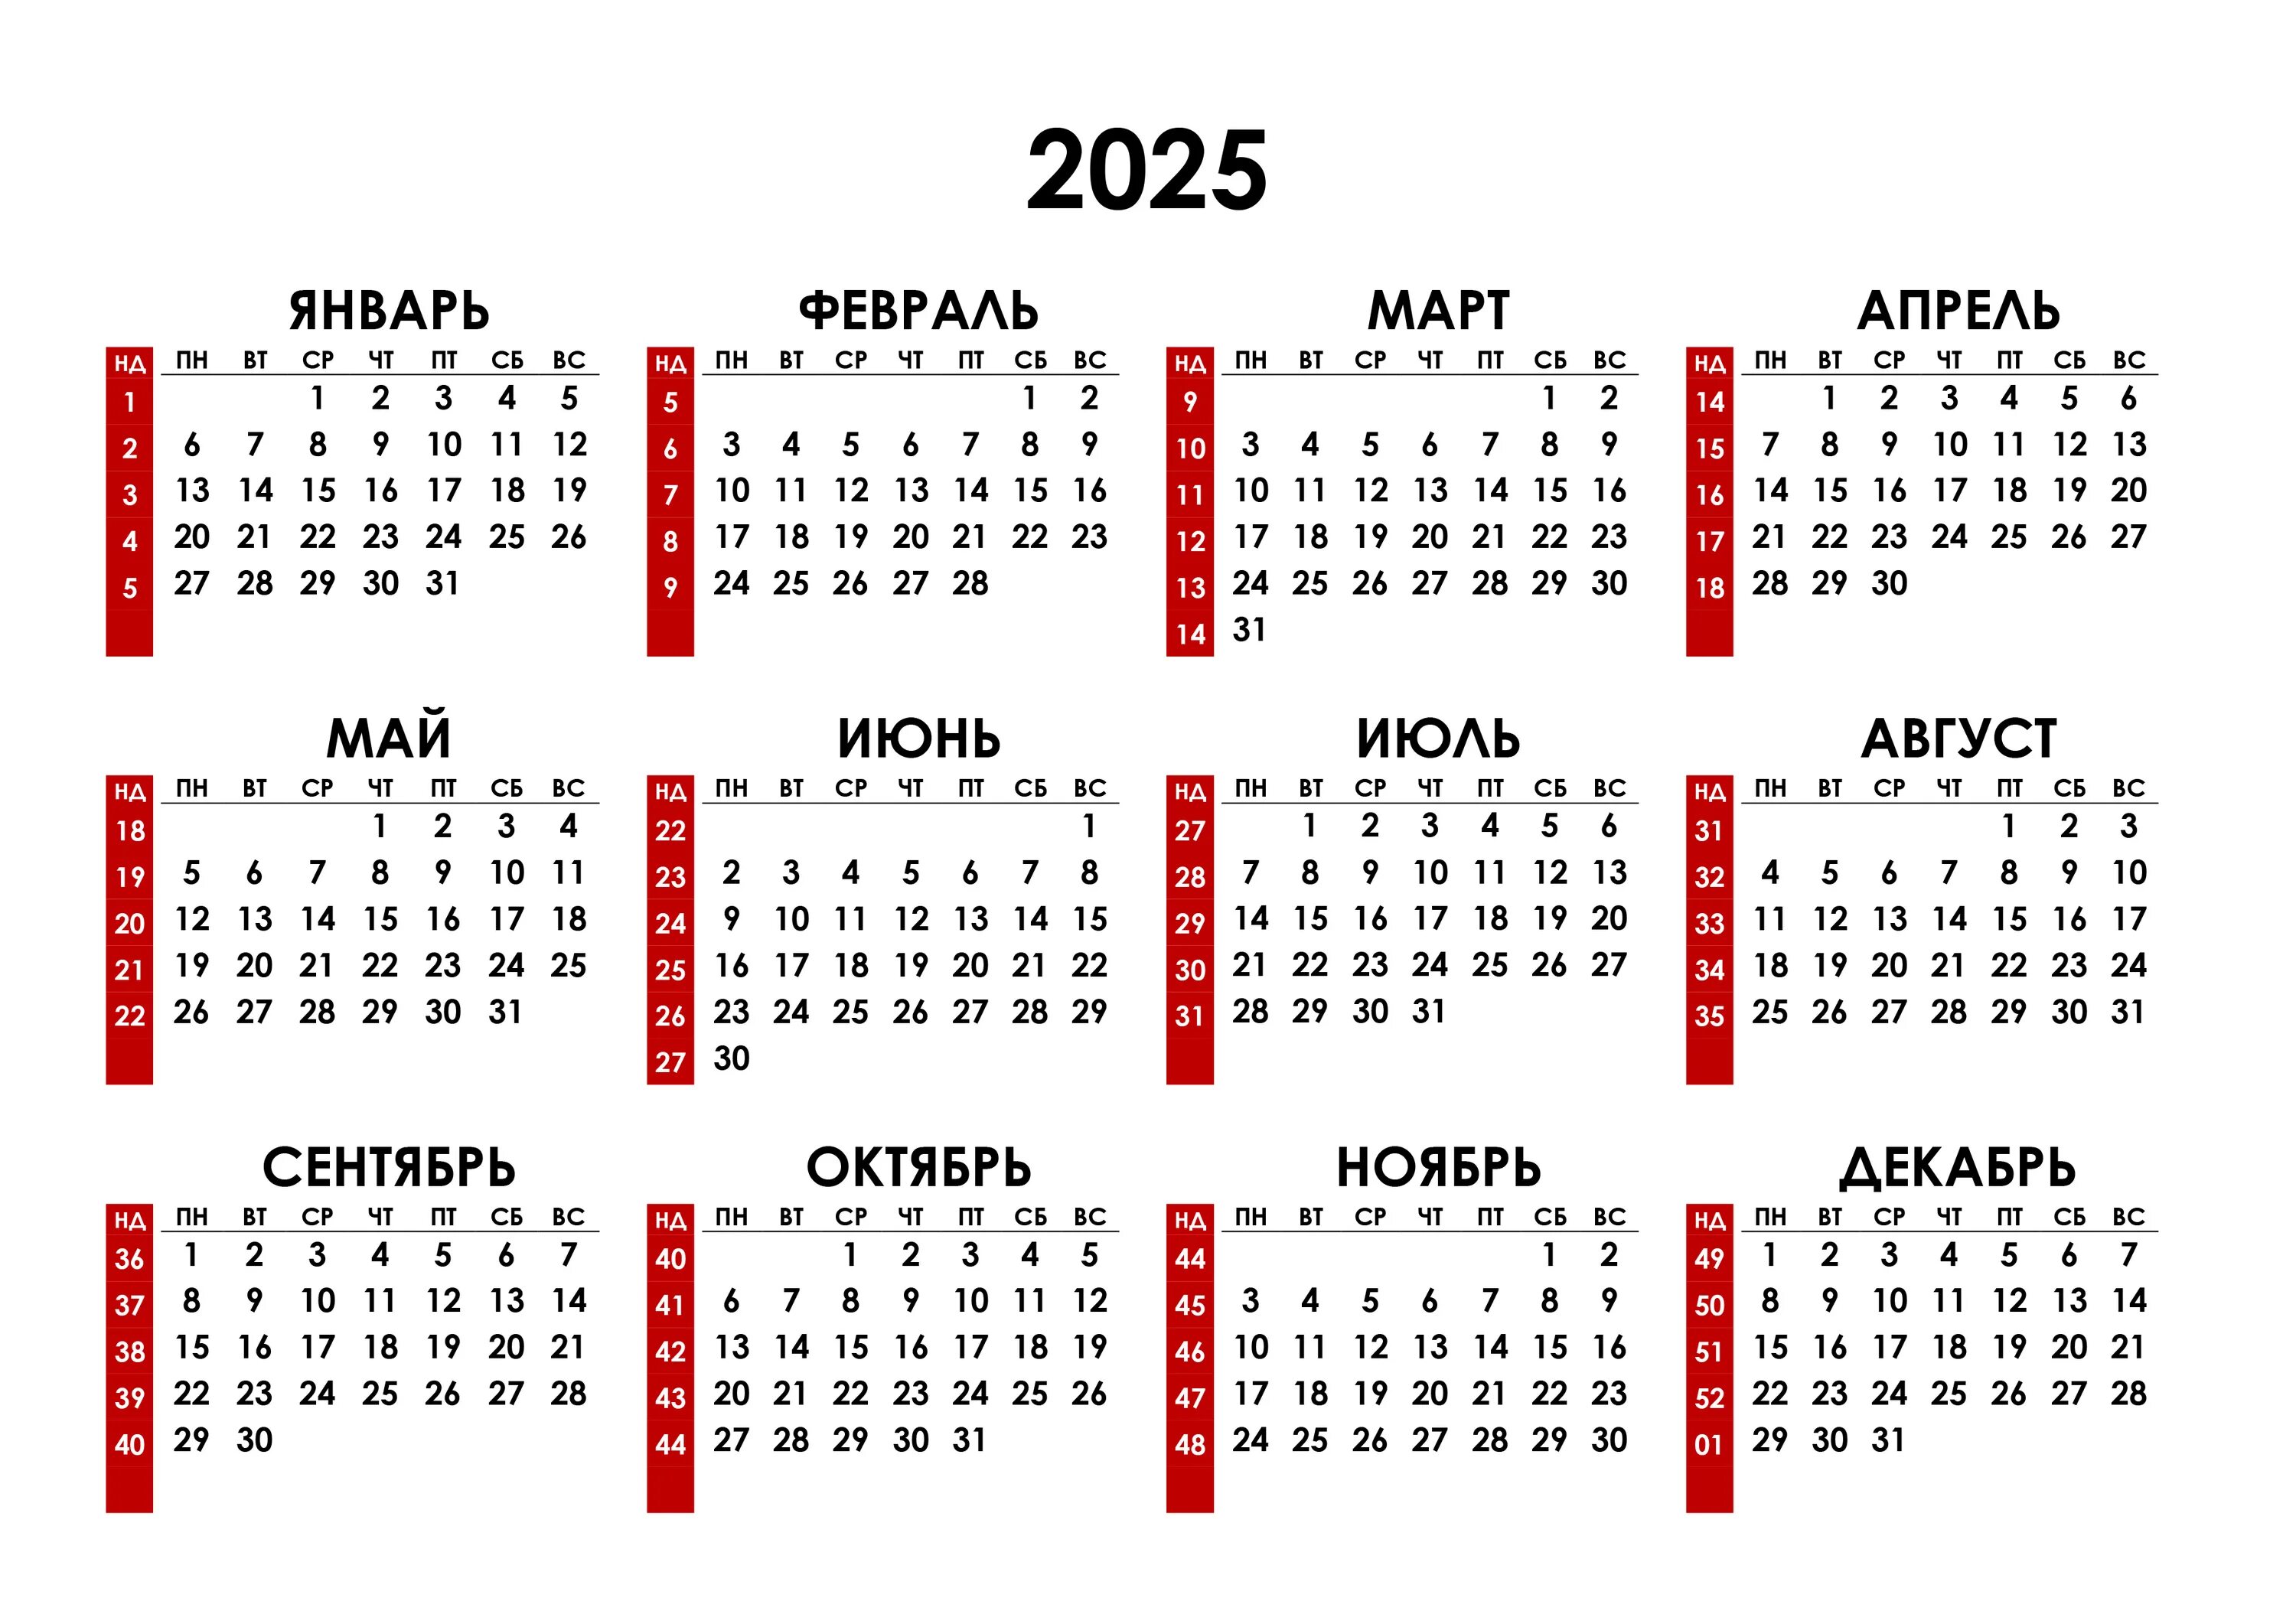 Сколько недель в квартале. Календарь на 2023 год. Календарь с номерами недель 2023. Календарь синомерами недель. Hrfktylfhm PF 2023 ujl.